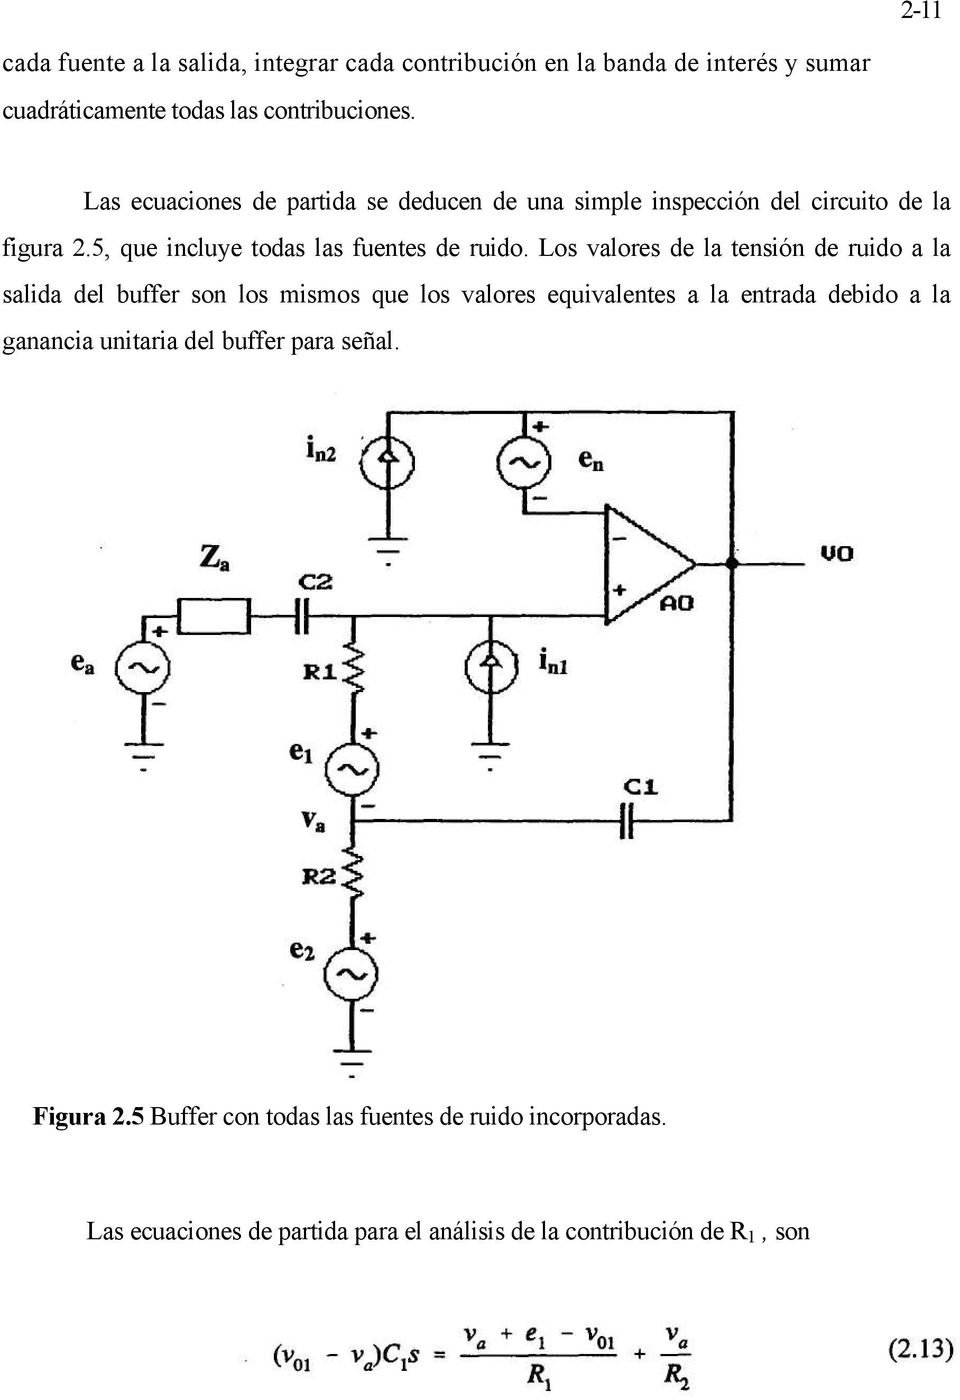 Los valores de la tensión de ruido a la salida del buffer son los mismos que los valores equivalentes a la entrada debido a la ganancia